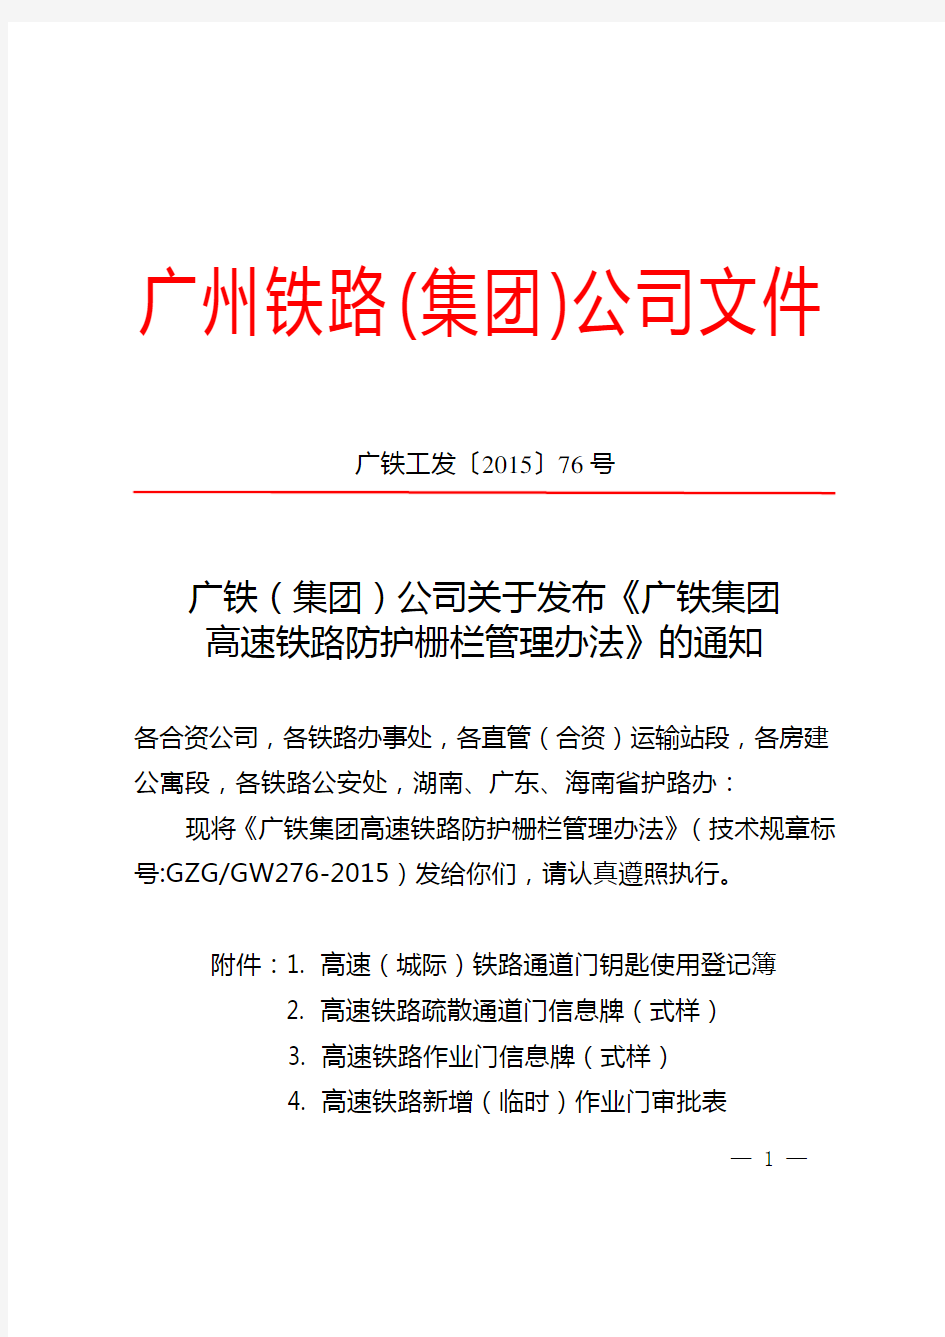 (广铁工发〔2015〕76号)广铁(集团)公司关于发布《广铁集团高速铁路防护栅栏管理办法》的通知